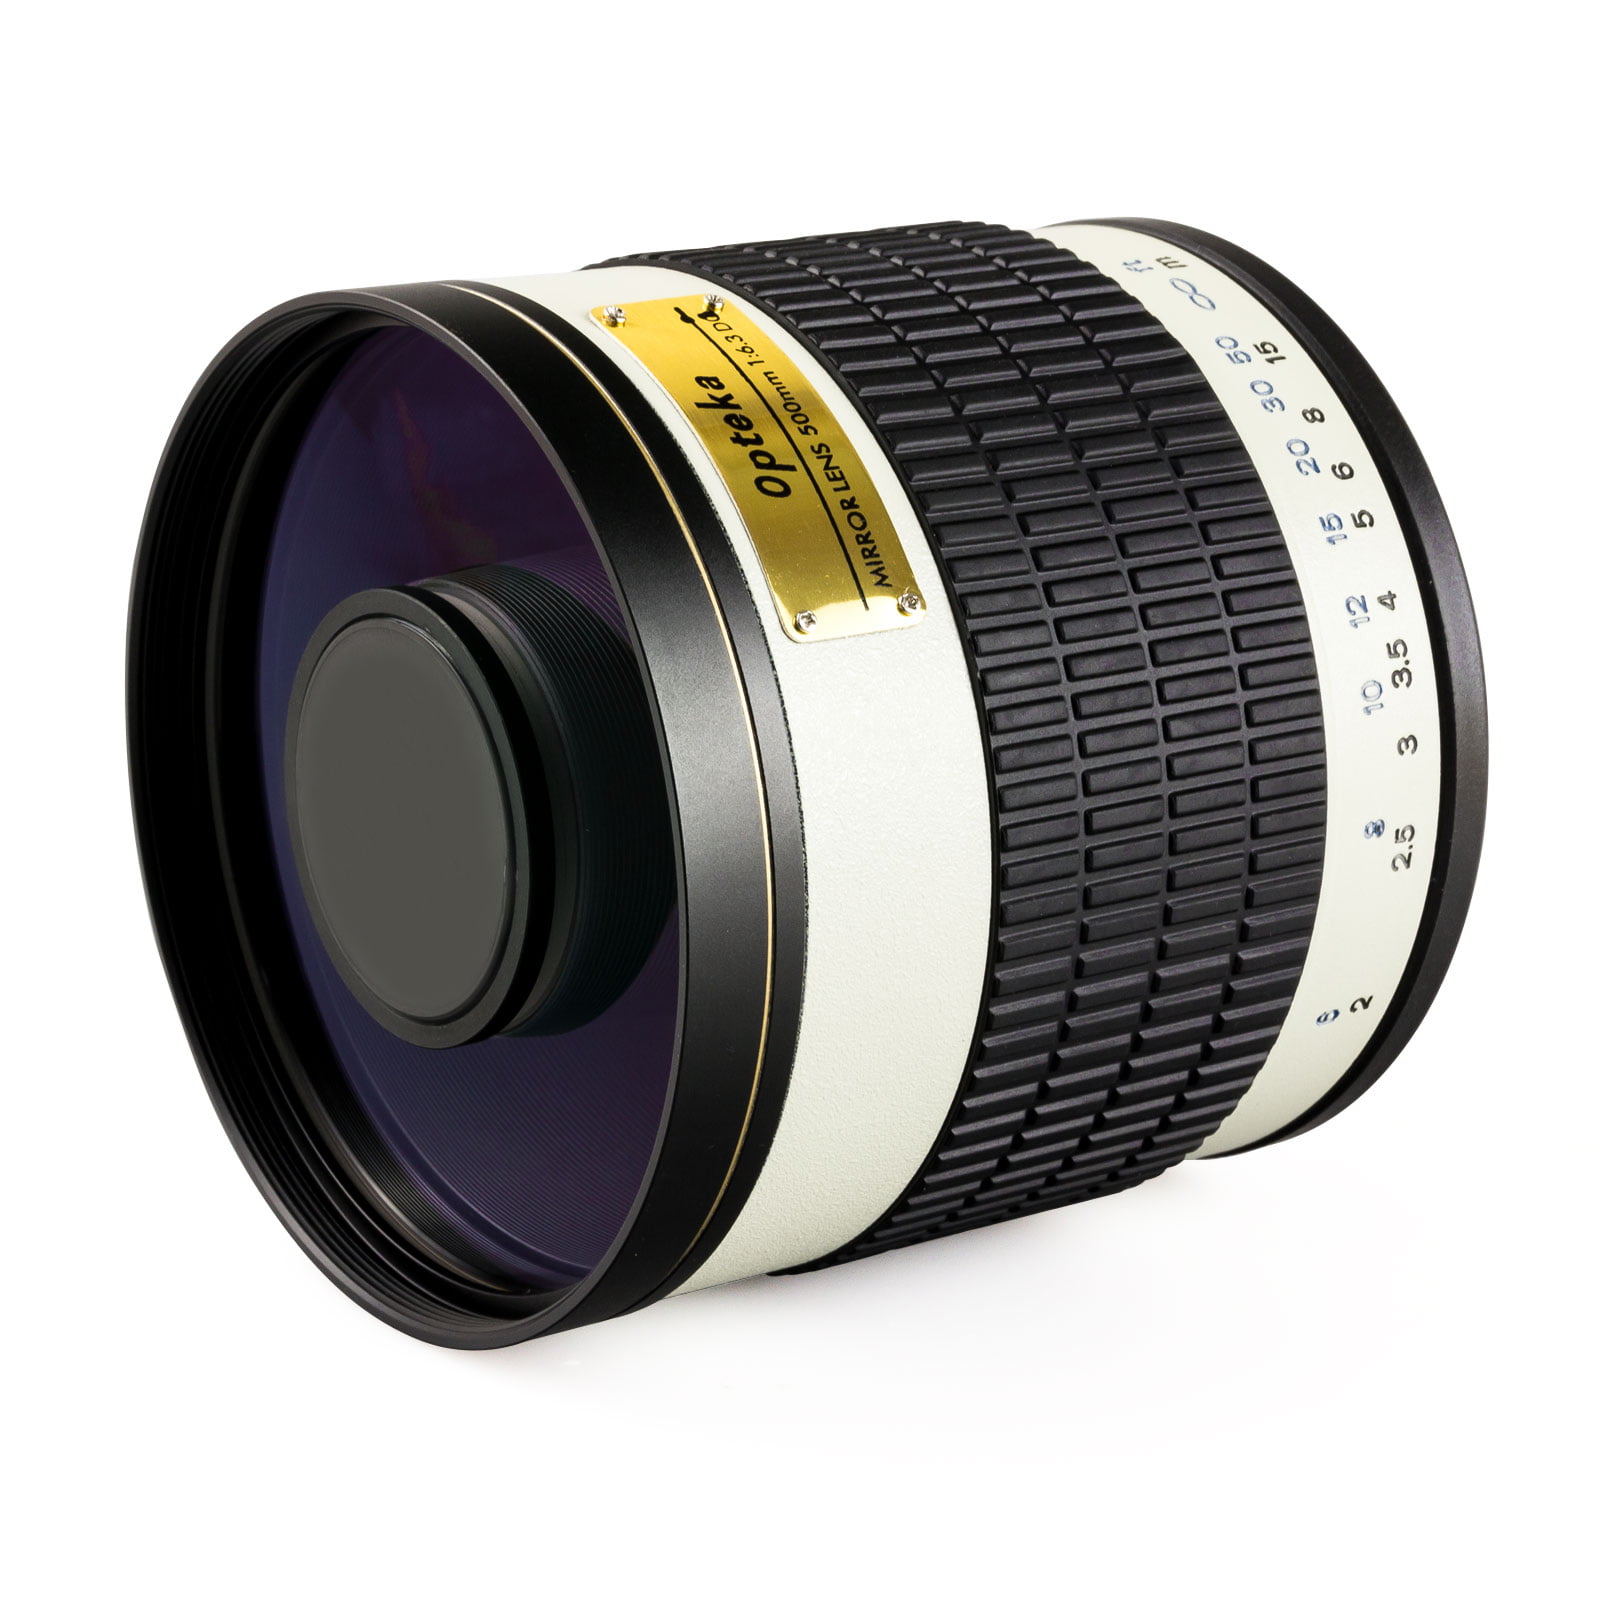 E-500 E-400 E-510 E-520 Super 500mm Manual Preset Telephoto Zoom Lens for Olympus EVOLT E-5 E-450 E-410 E-420 E-330 and E-300 Digital SLR Cameras 